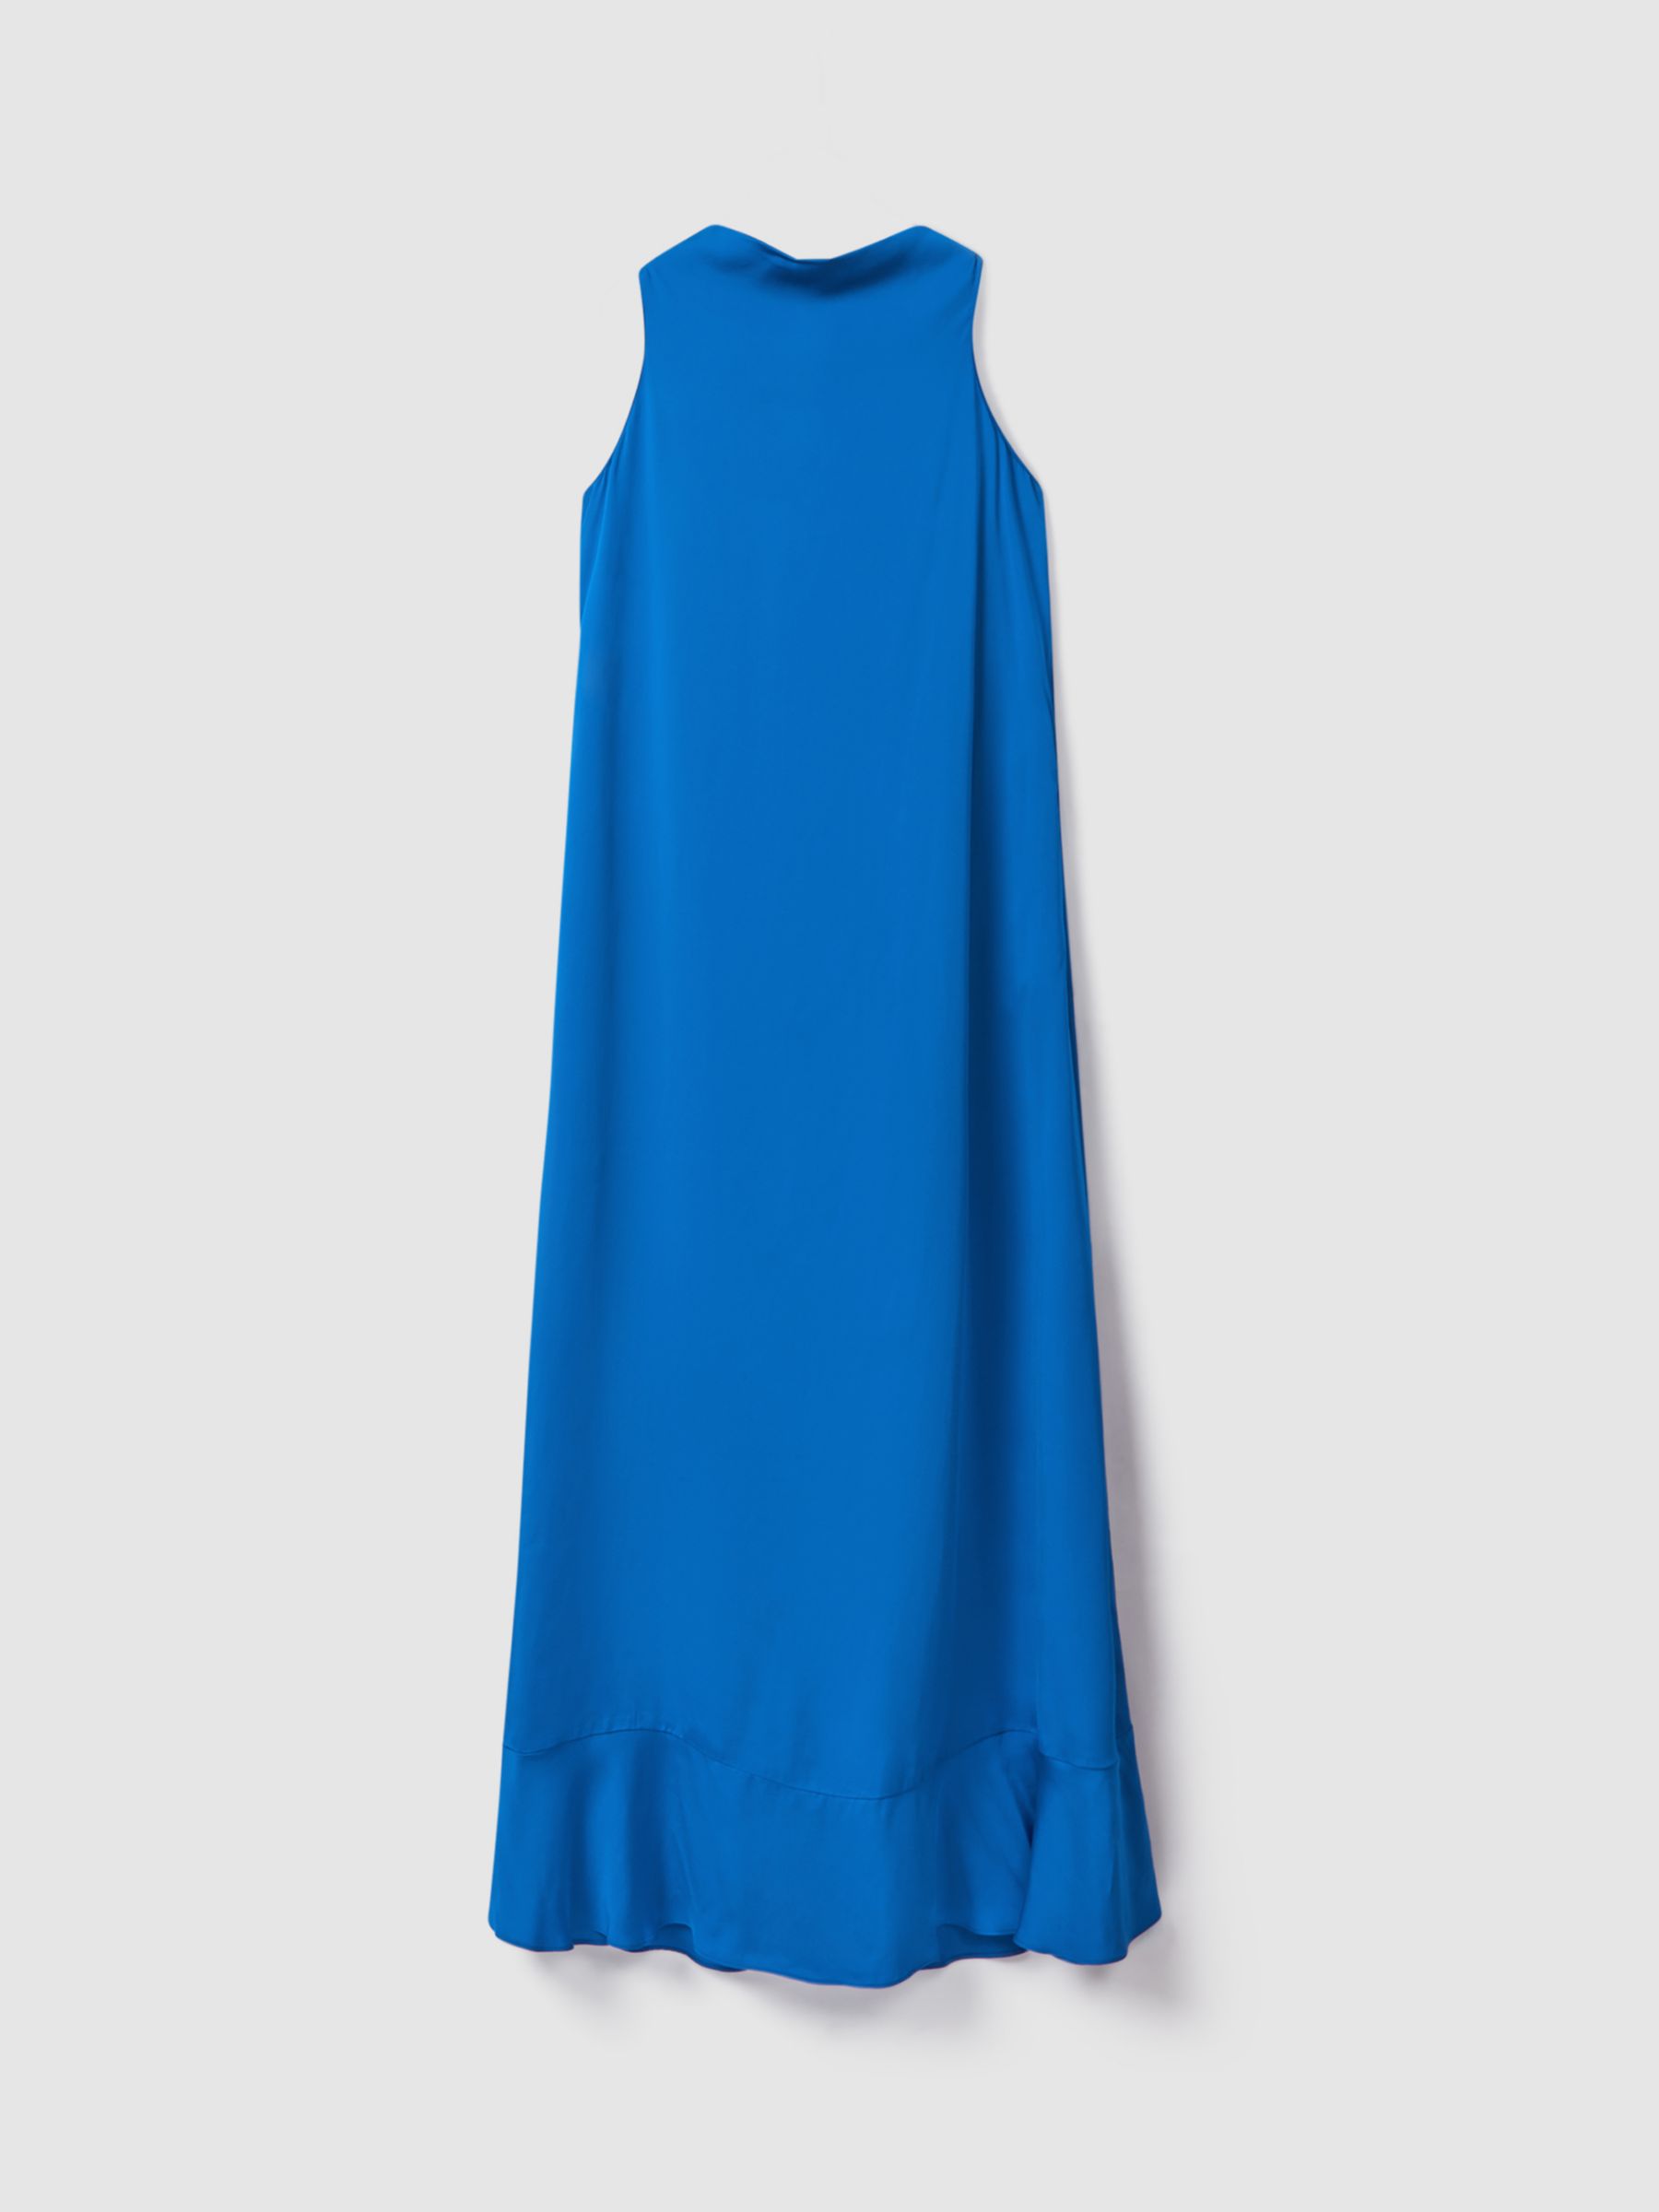 Reiss Dina Cowl Neck Column Maxi Dress, Cobalt Blue, 6